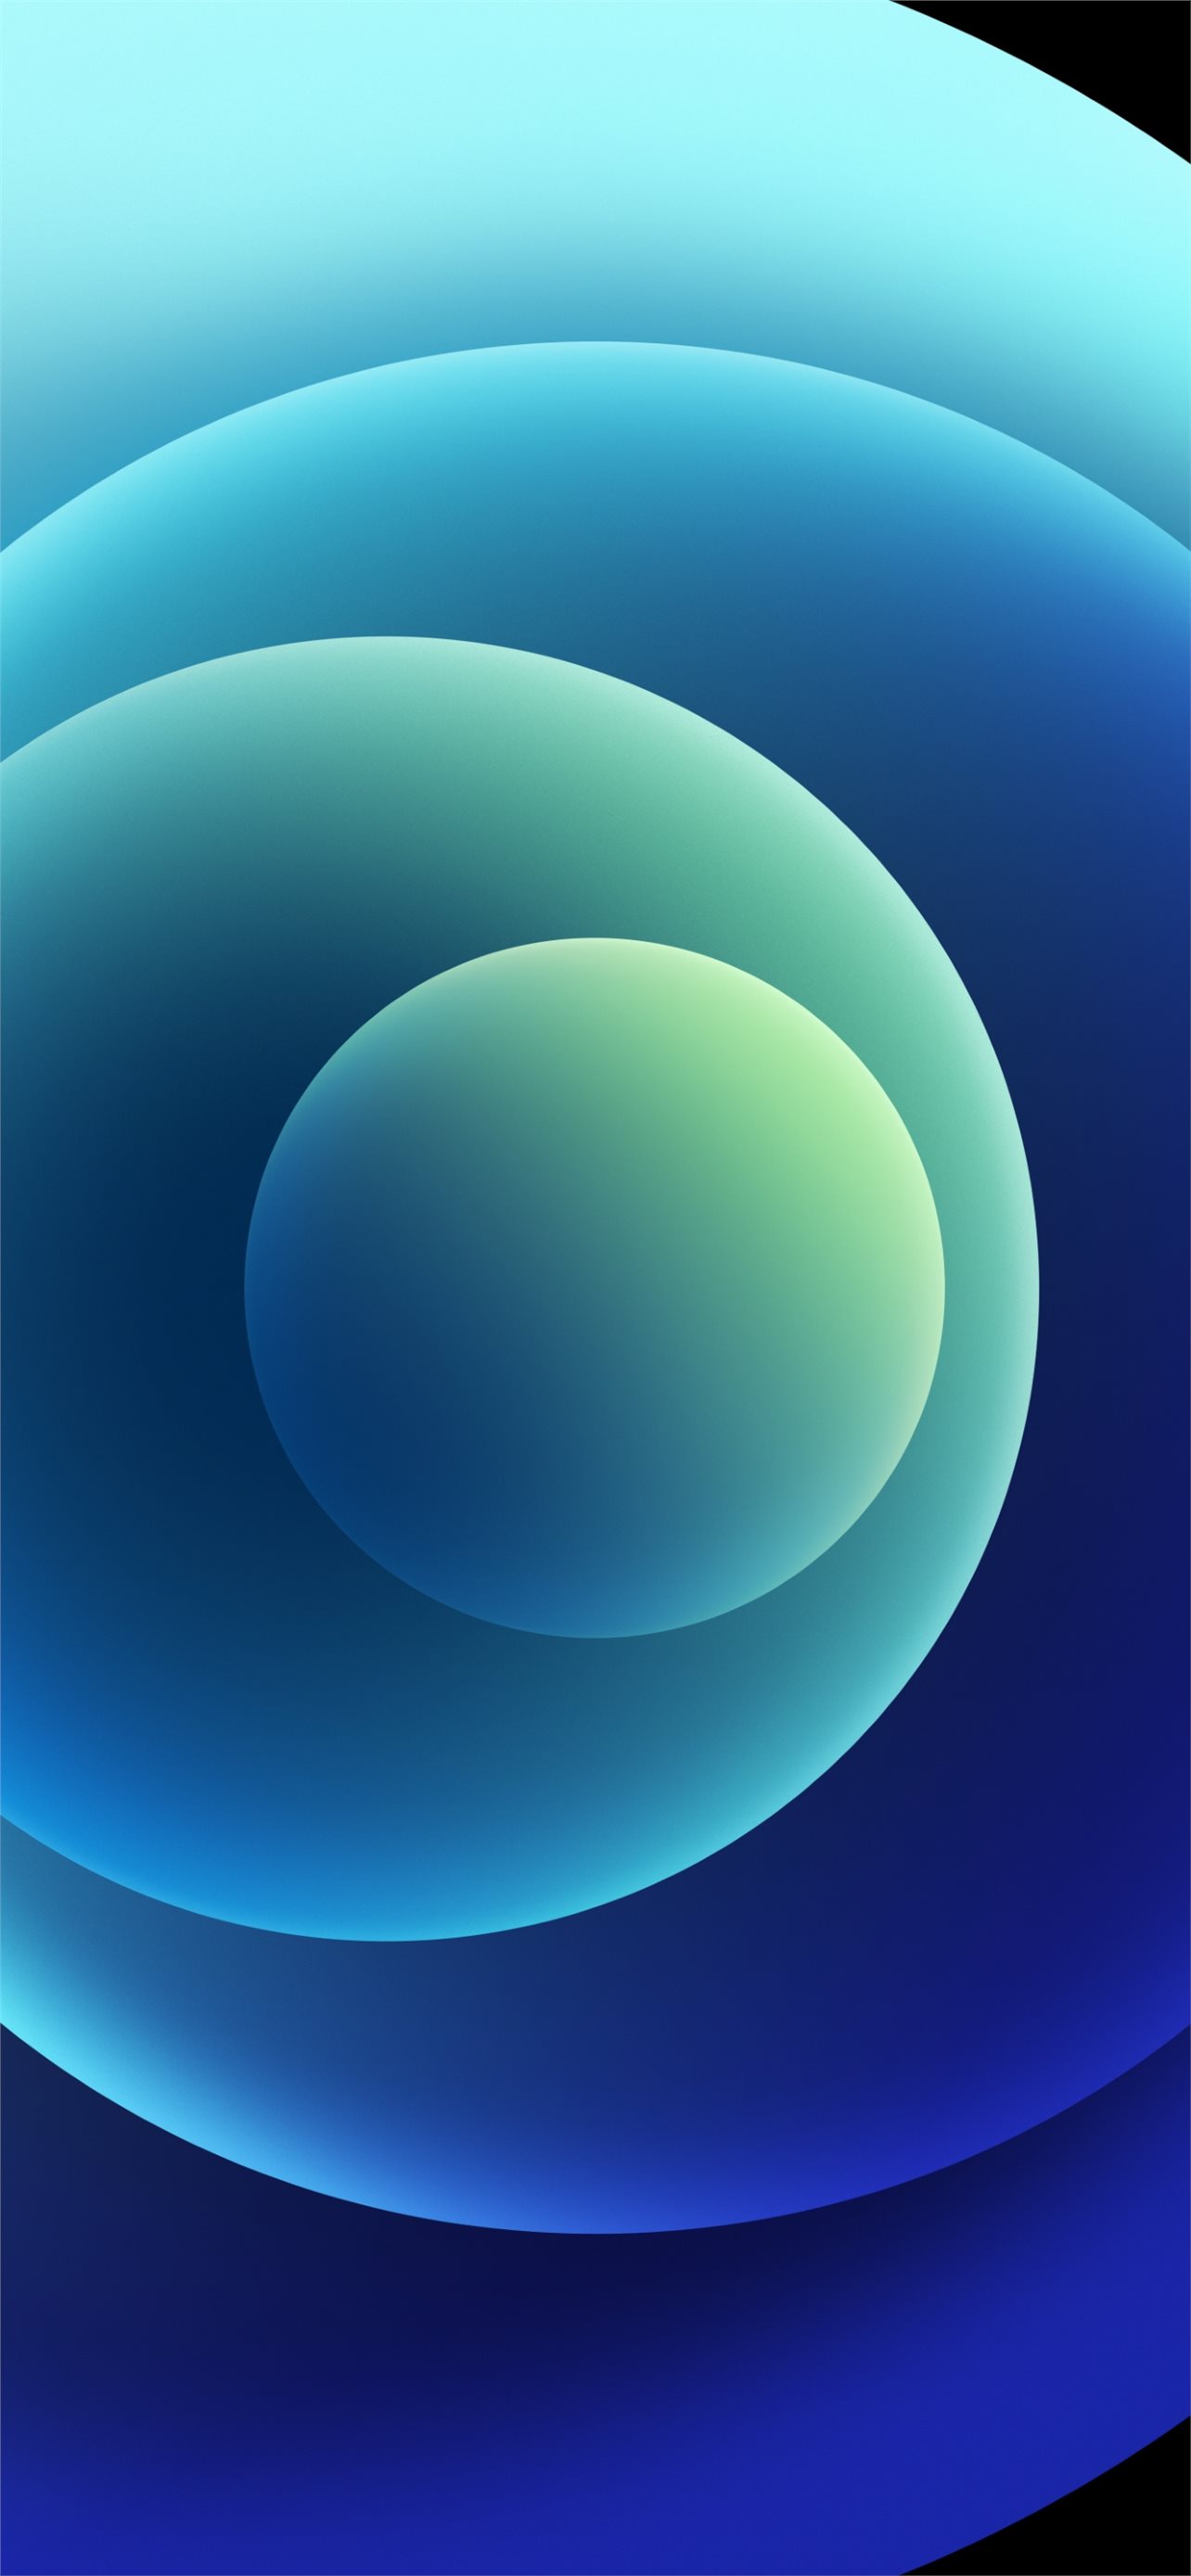 Tận hưởng các hình nền iPhone 12 đầy màu sắc và sống động với Stock wallpaper Orbs Blue Light iPhone 12 màu sắc đa dạng. Tạo ra một không gian độc đáo với những hình nền đẹp này. Hãy tải ngay và sử dụng chúng để tạo ra một phong cách hoàn toàn mới cho điện thoại của bạn.